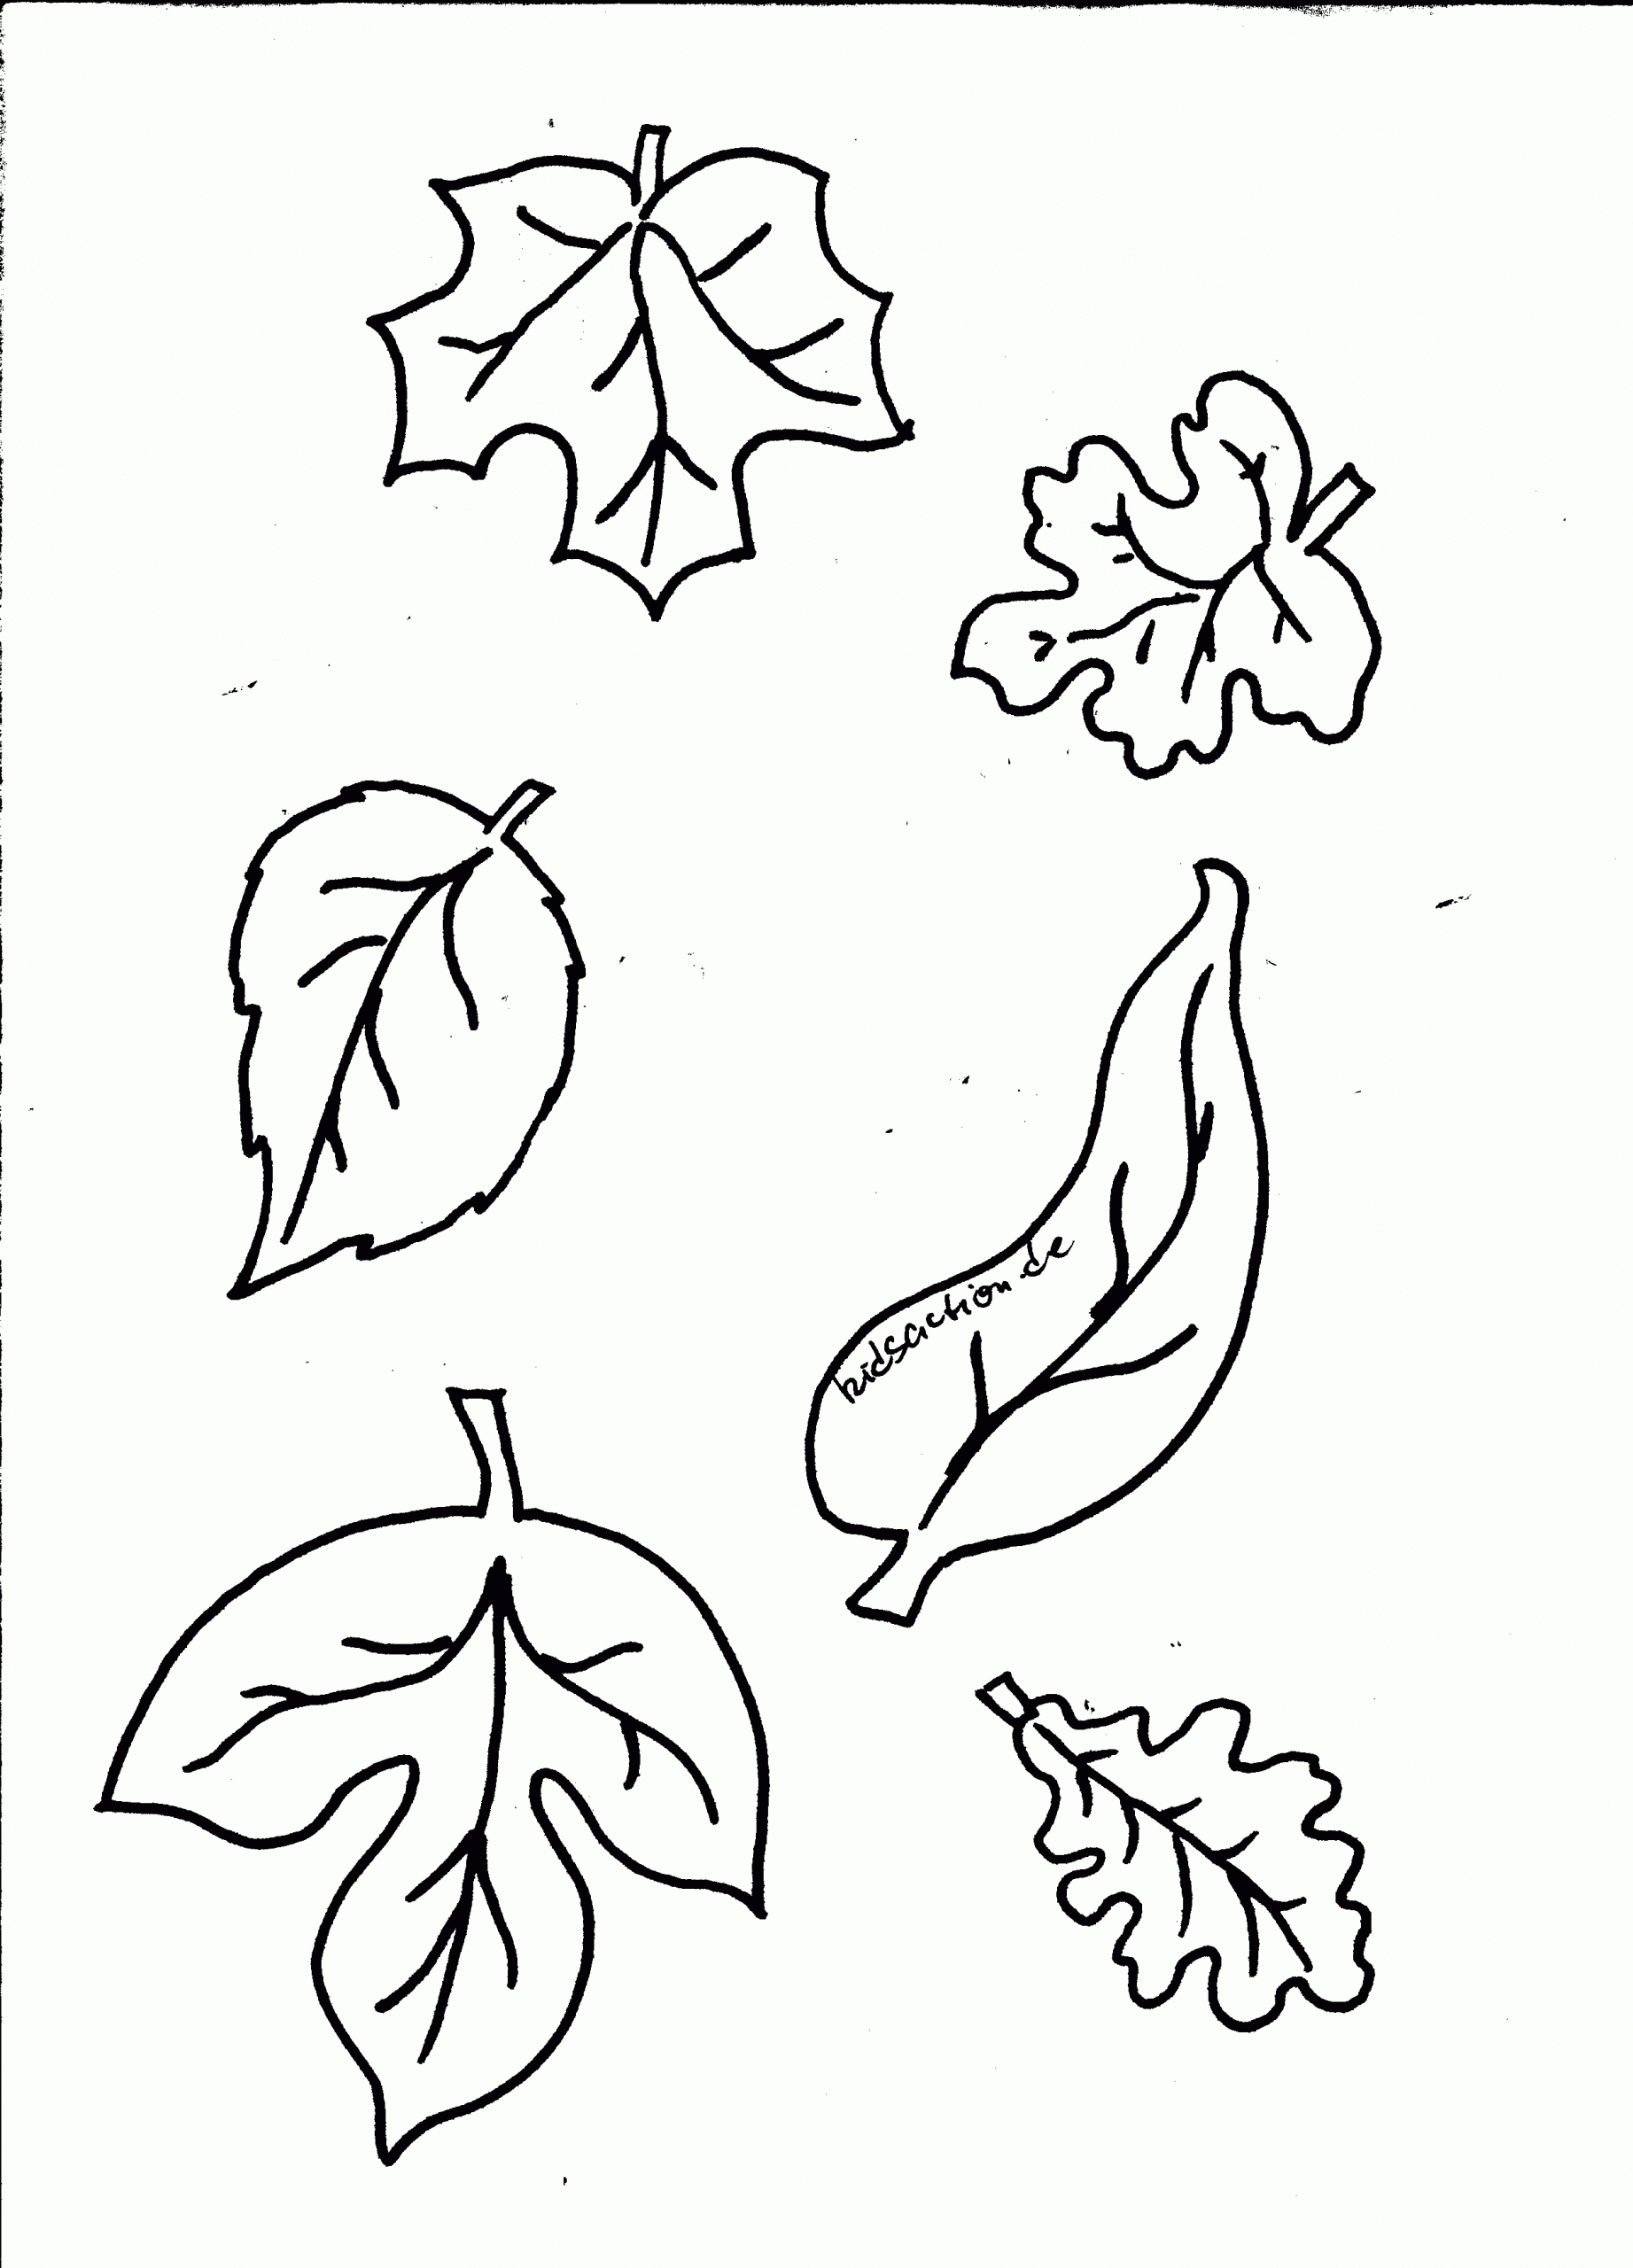 Herbstblätter Basteln Malvorlagen 04 | Malvorlagen Blumen bei Herbstblätter Malvorlagen